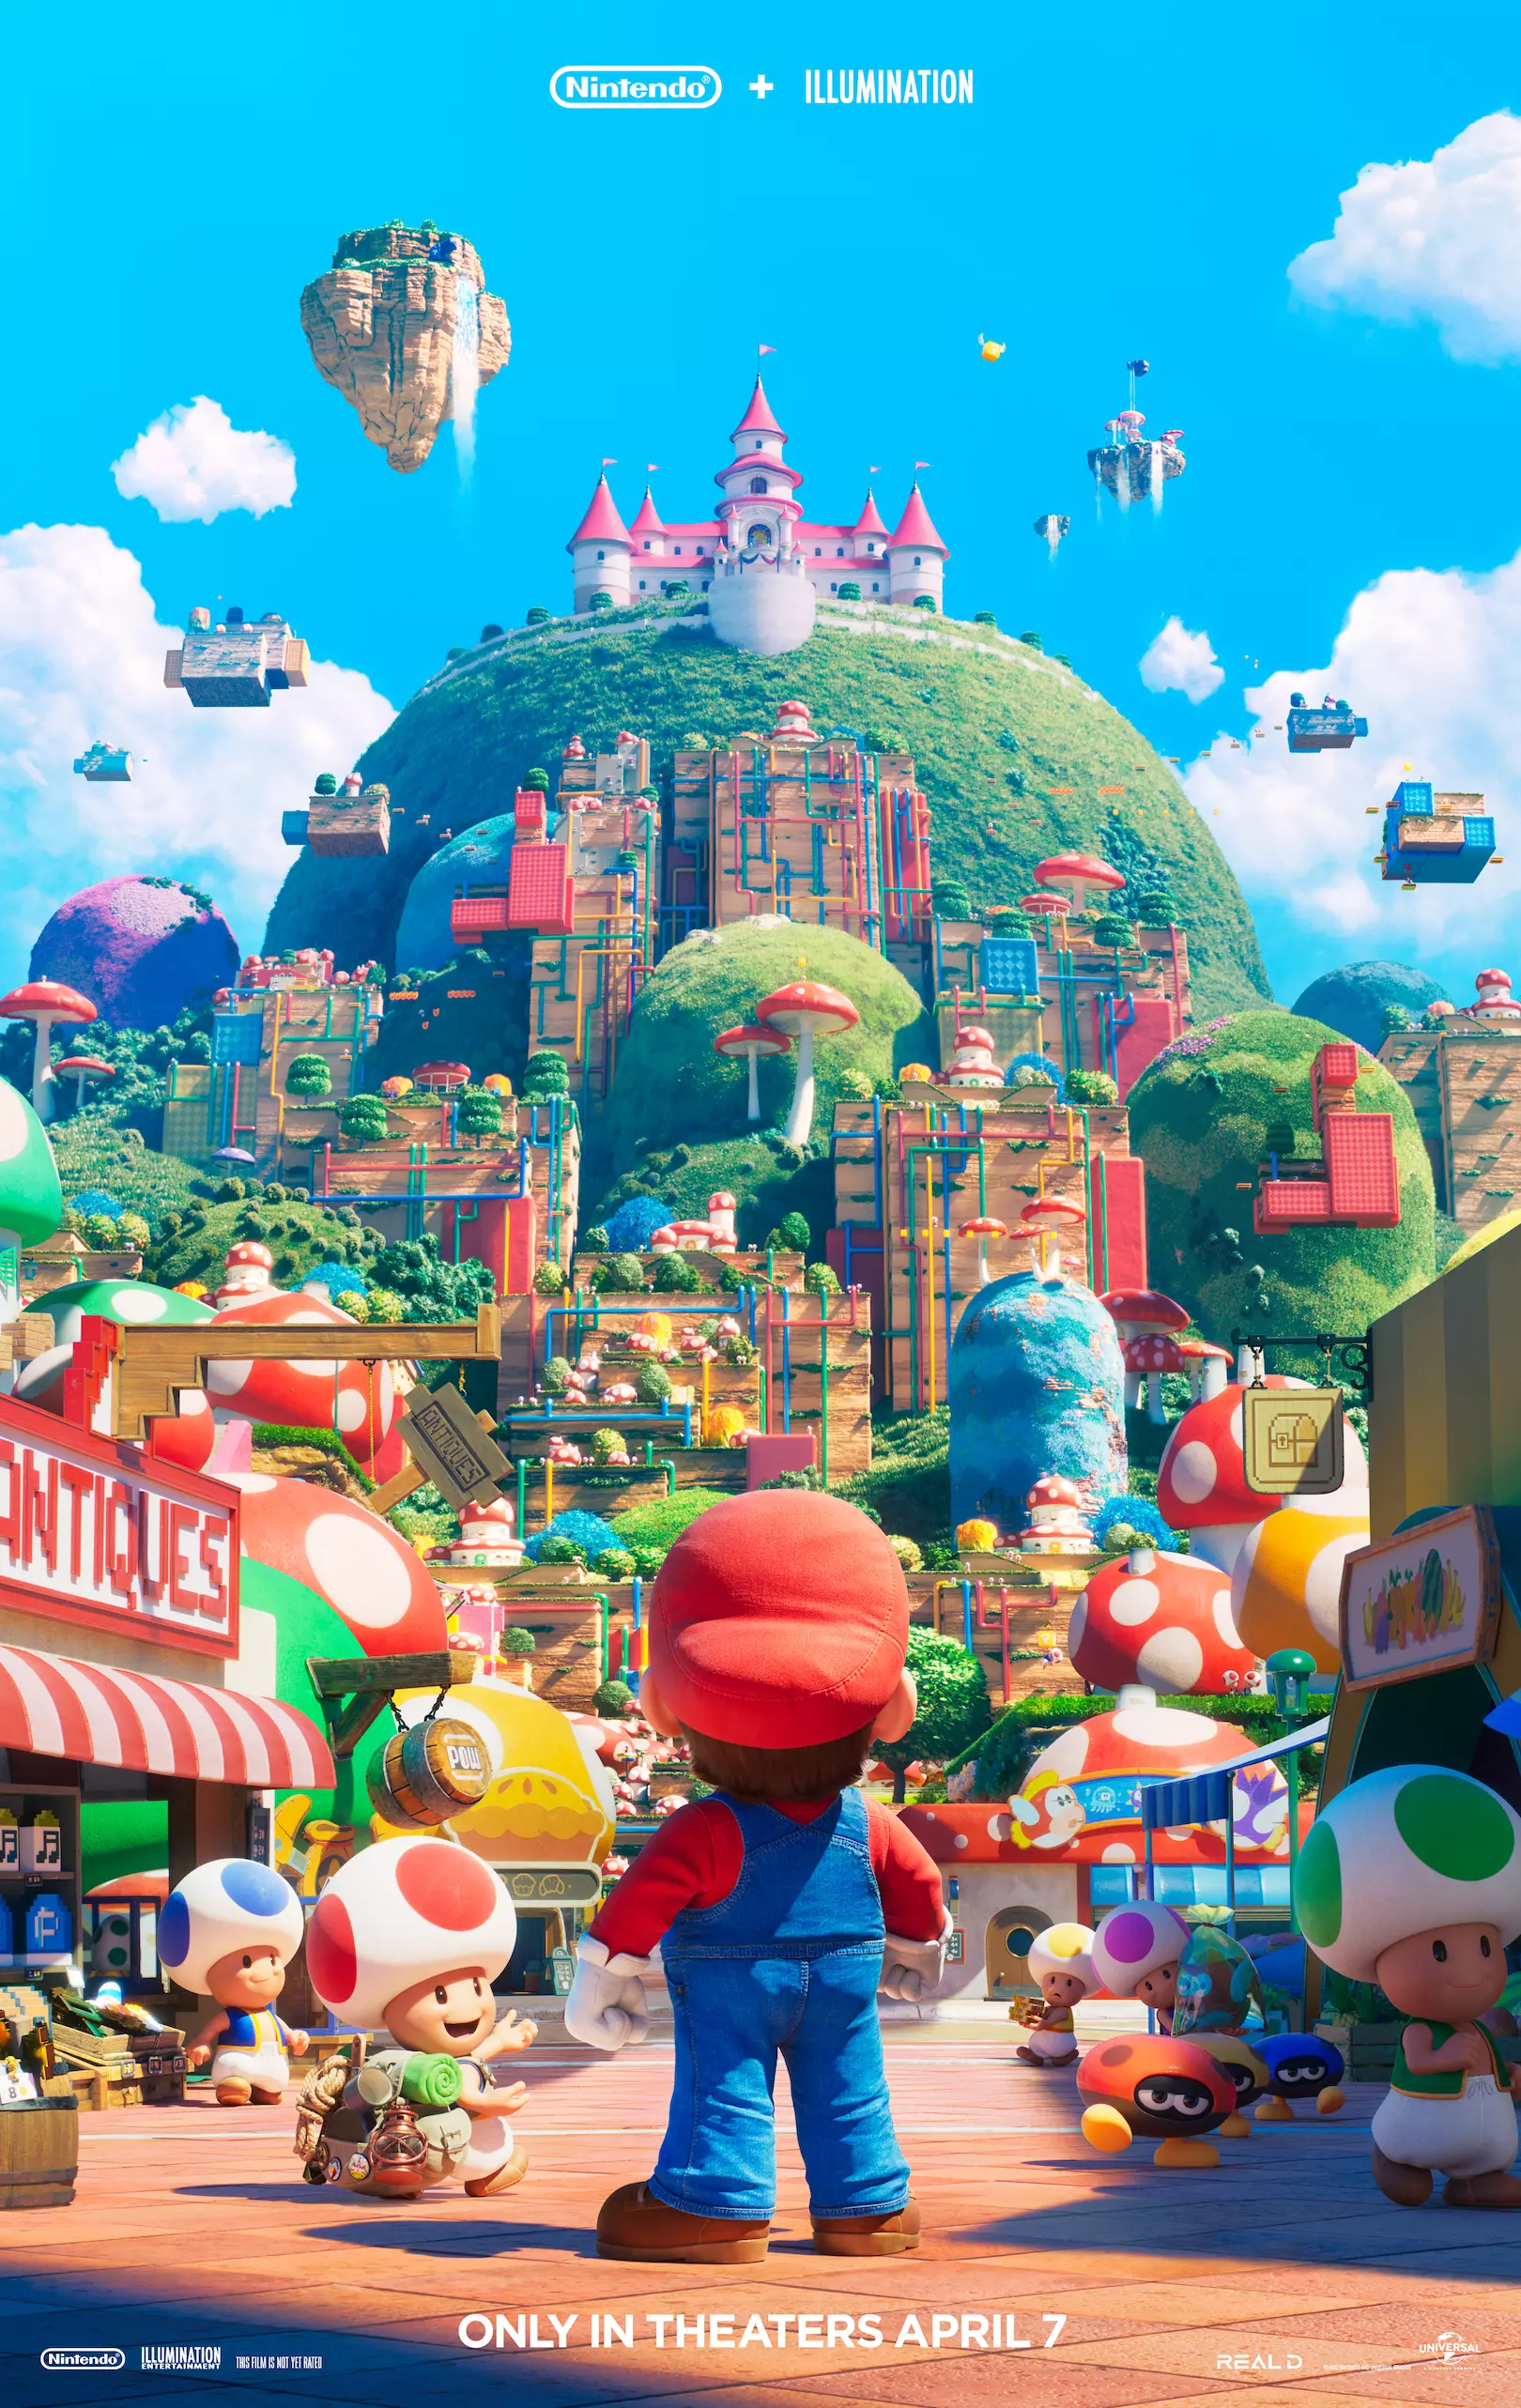 poster oficial do Super Mario Bros o filme usa as mesmas poses do